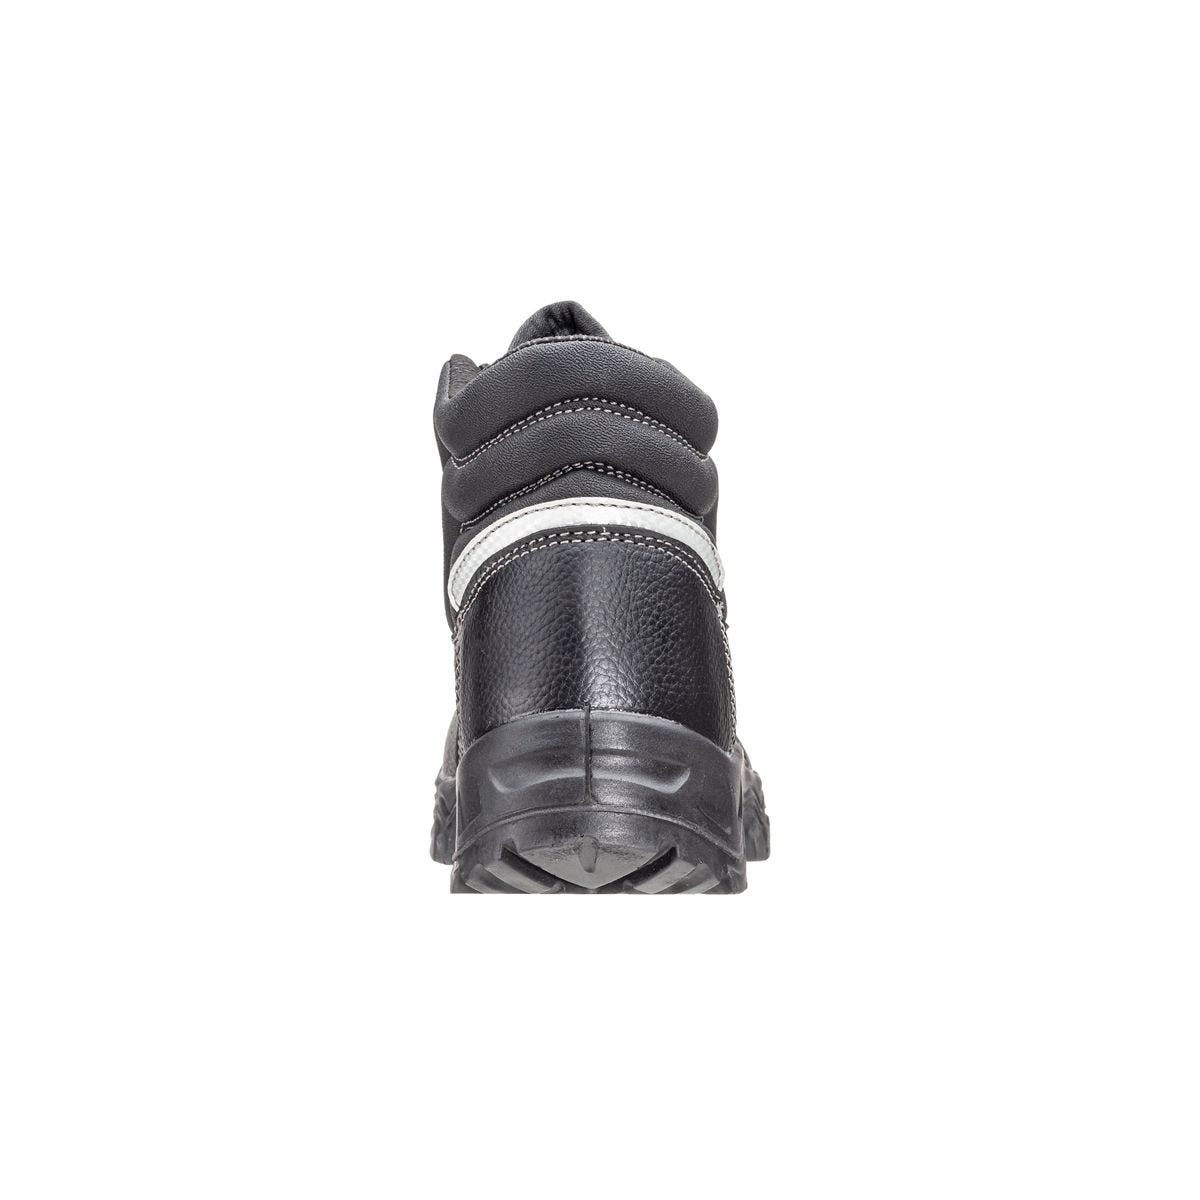 Chaussures de sécurité hautes Azurite II S3 ESD noir - Coverguard - Taille 47 4